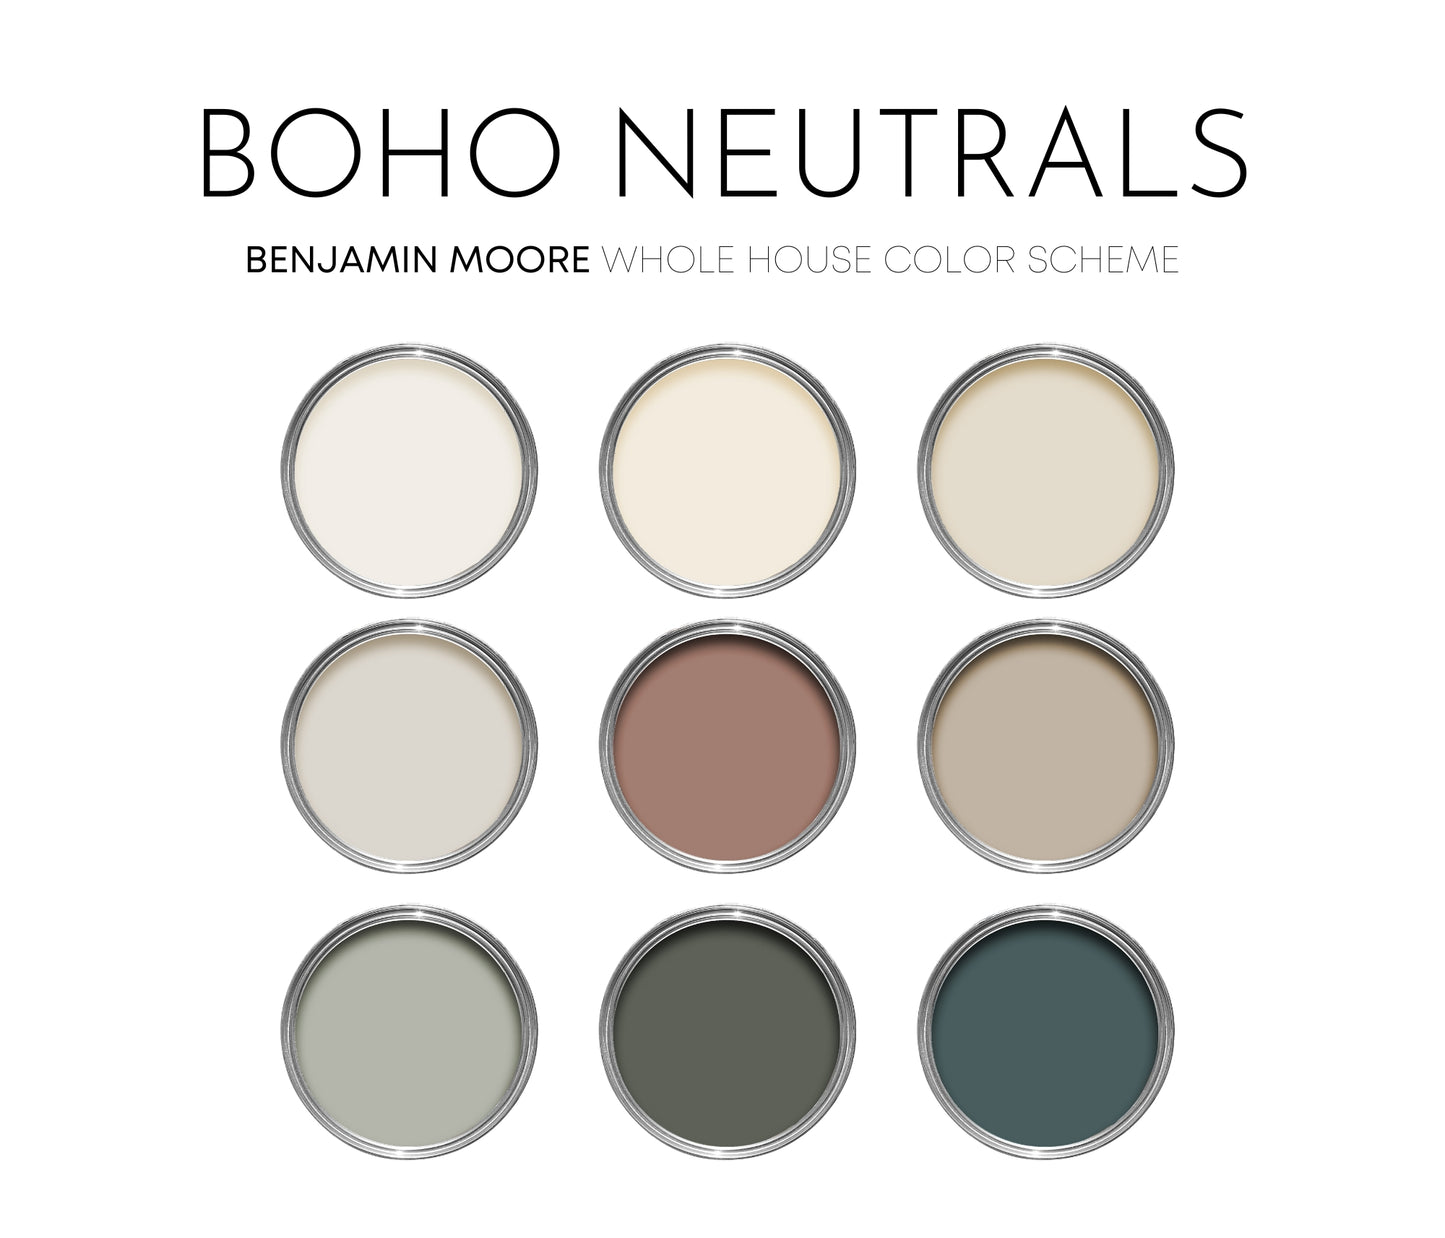 Boho Neutrals Benjamin Moore Paint Palette, Neutral Interior Paint Colors, Earthy Color Scheme, Vanderberg Blue Compliments, Warm Neutrals